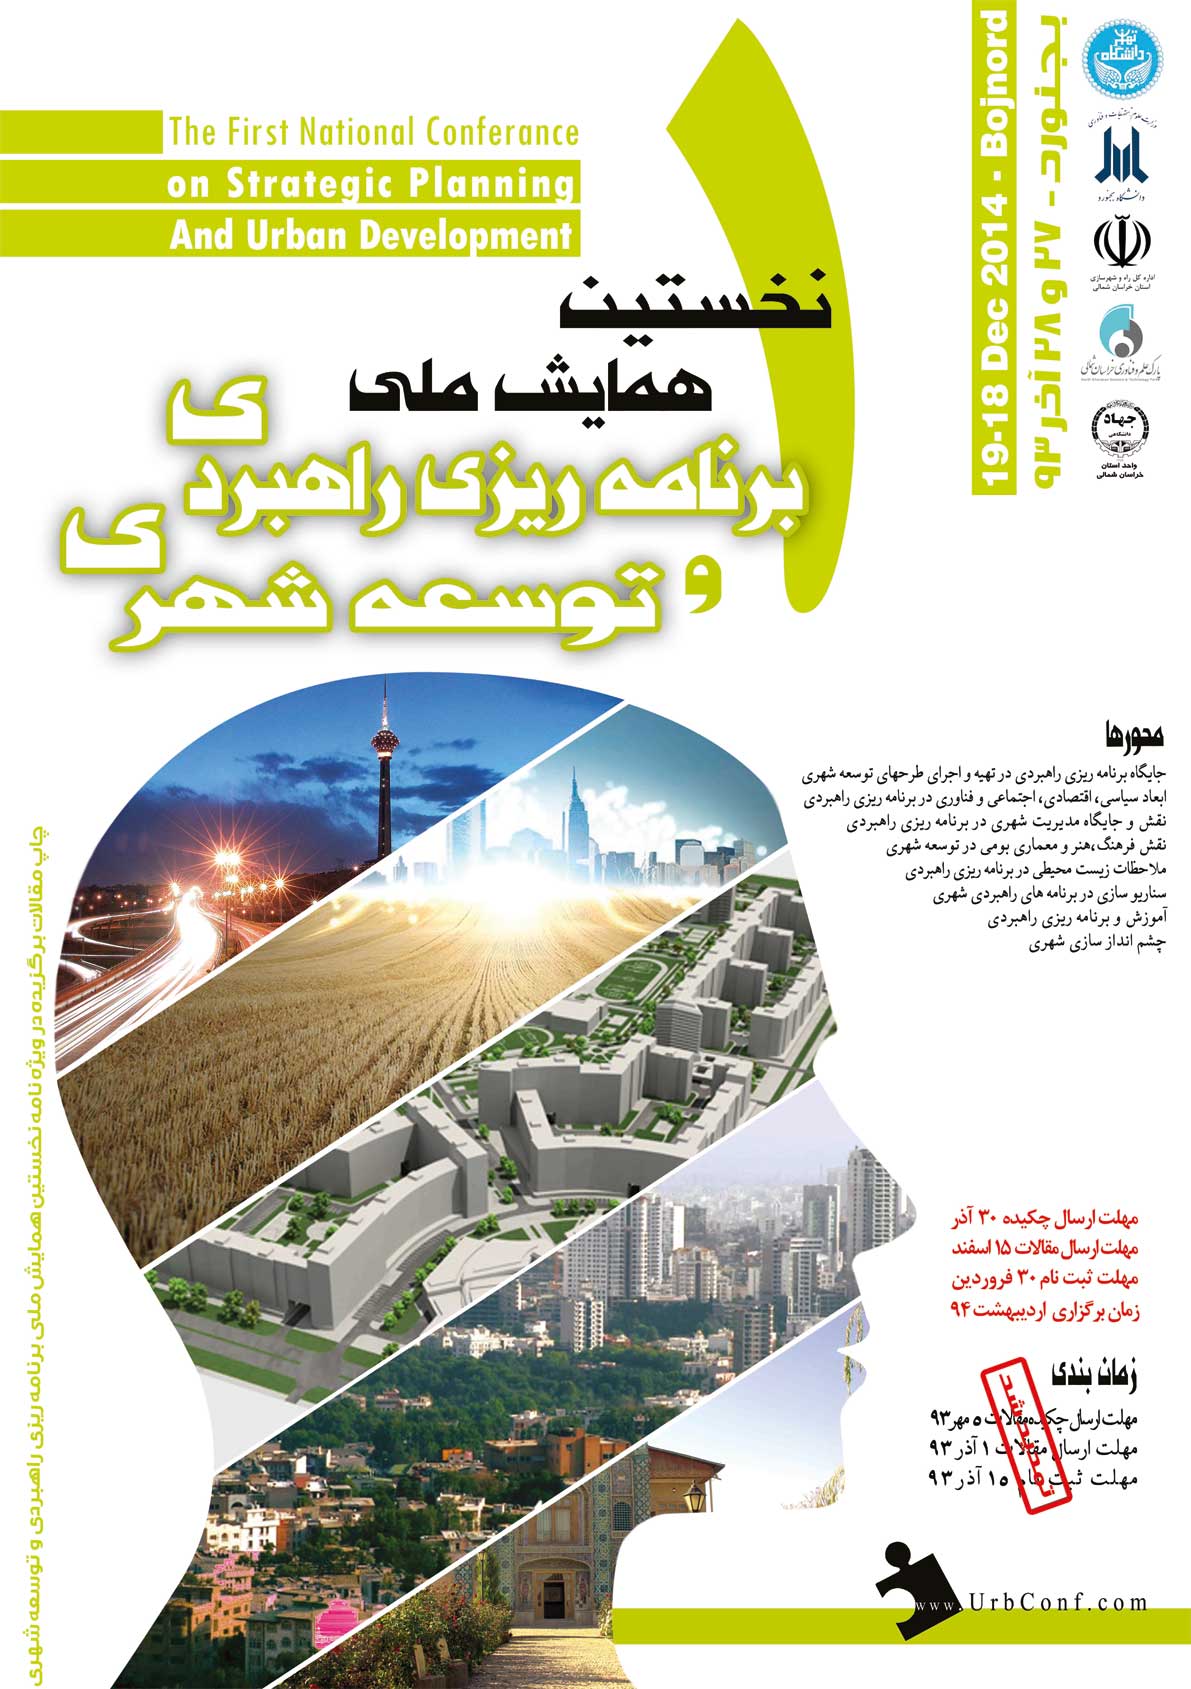 نخستین همایش ملی شهرسازی راهبردی و توسعه شهری